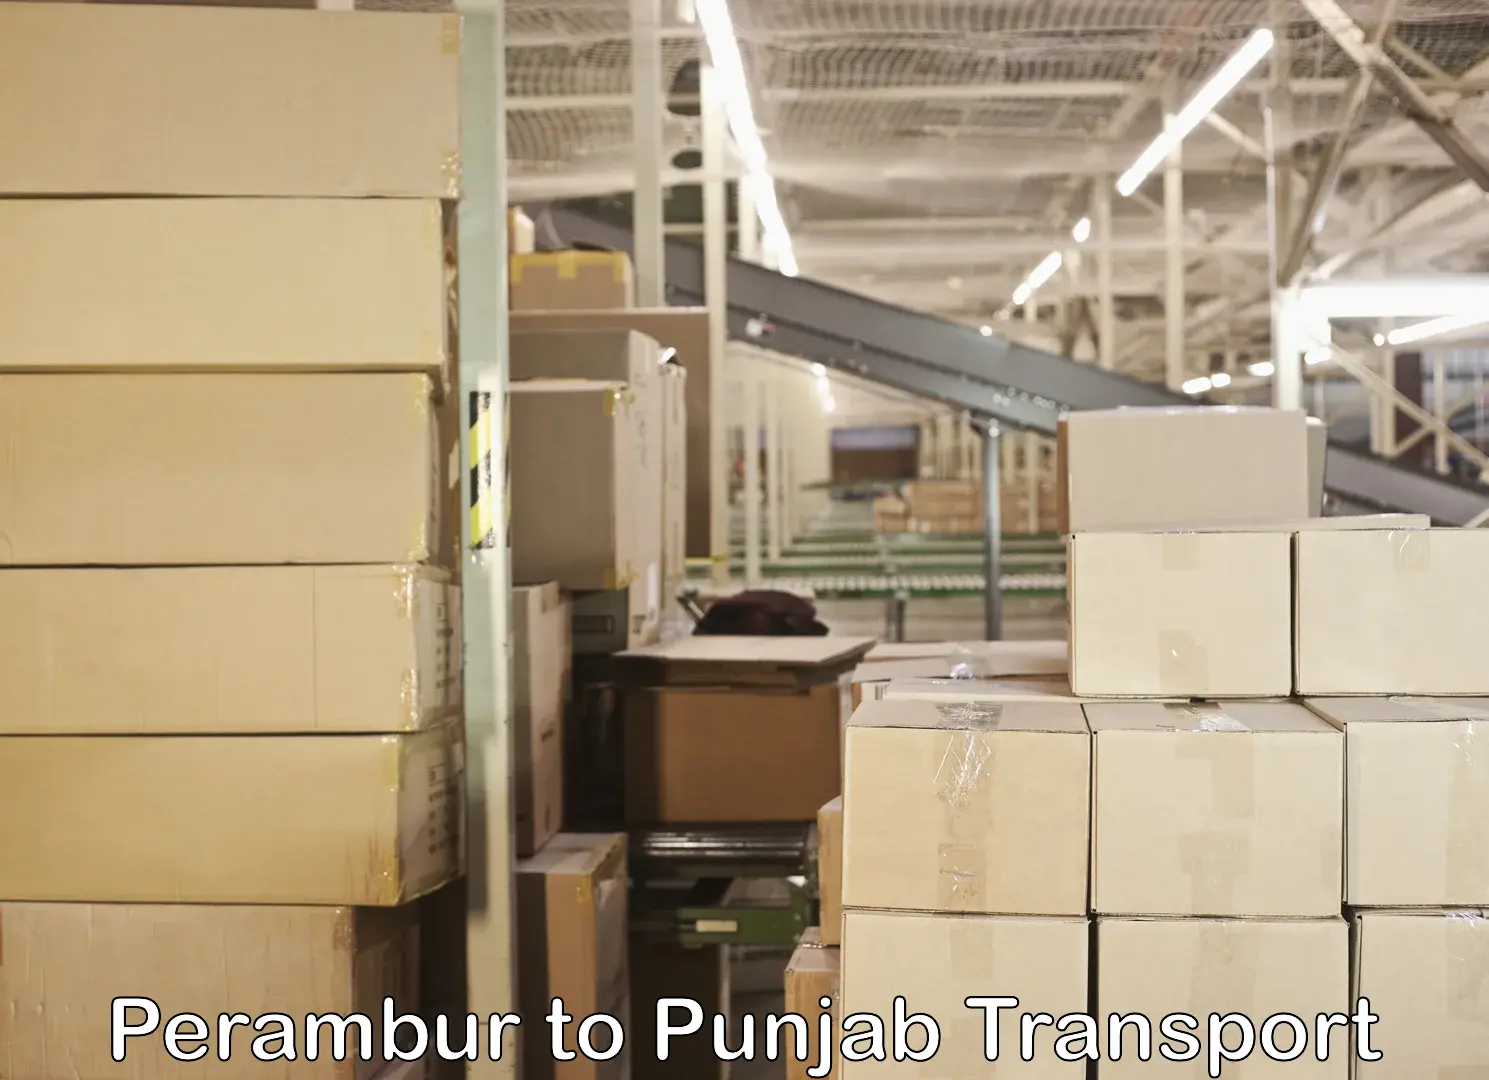 Shipping services in Perambur to Punjab